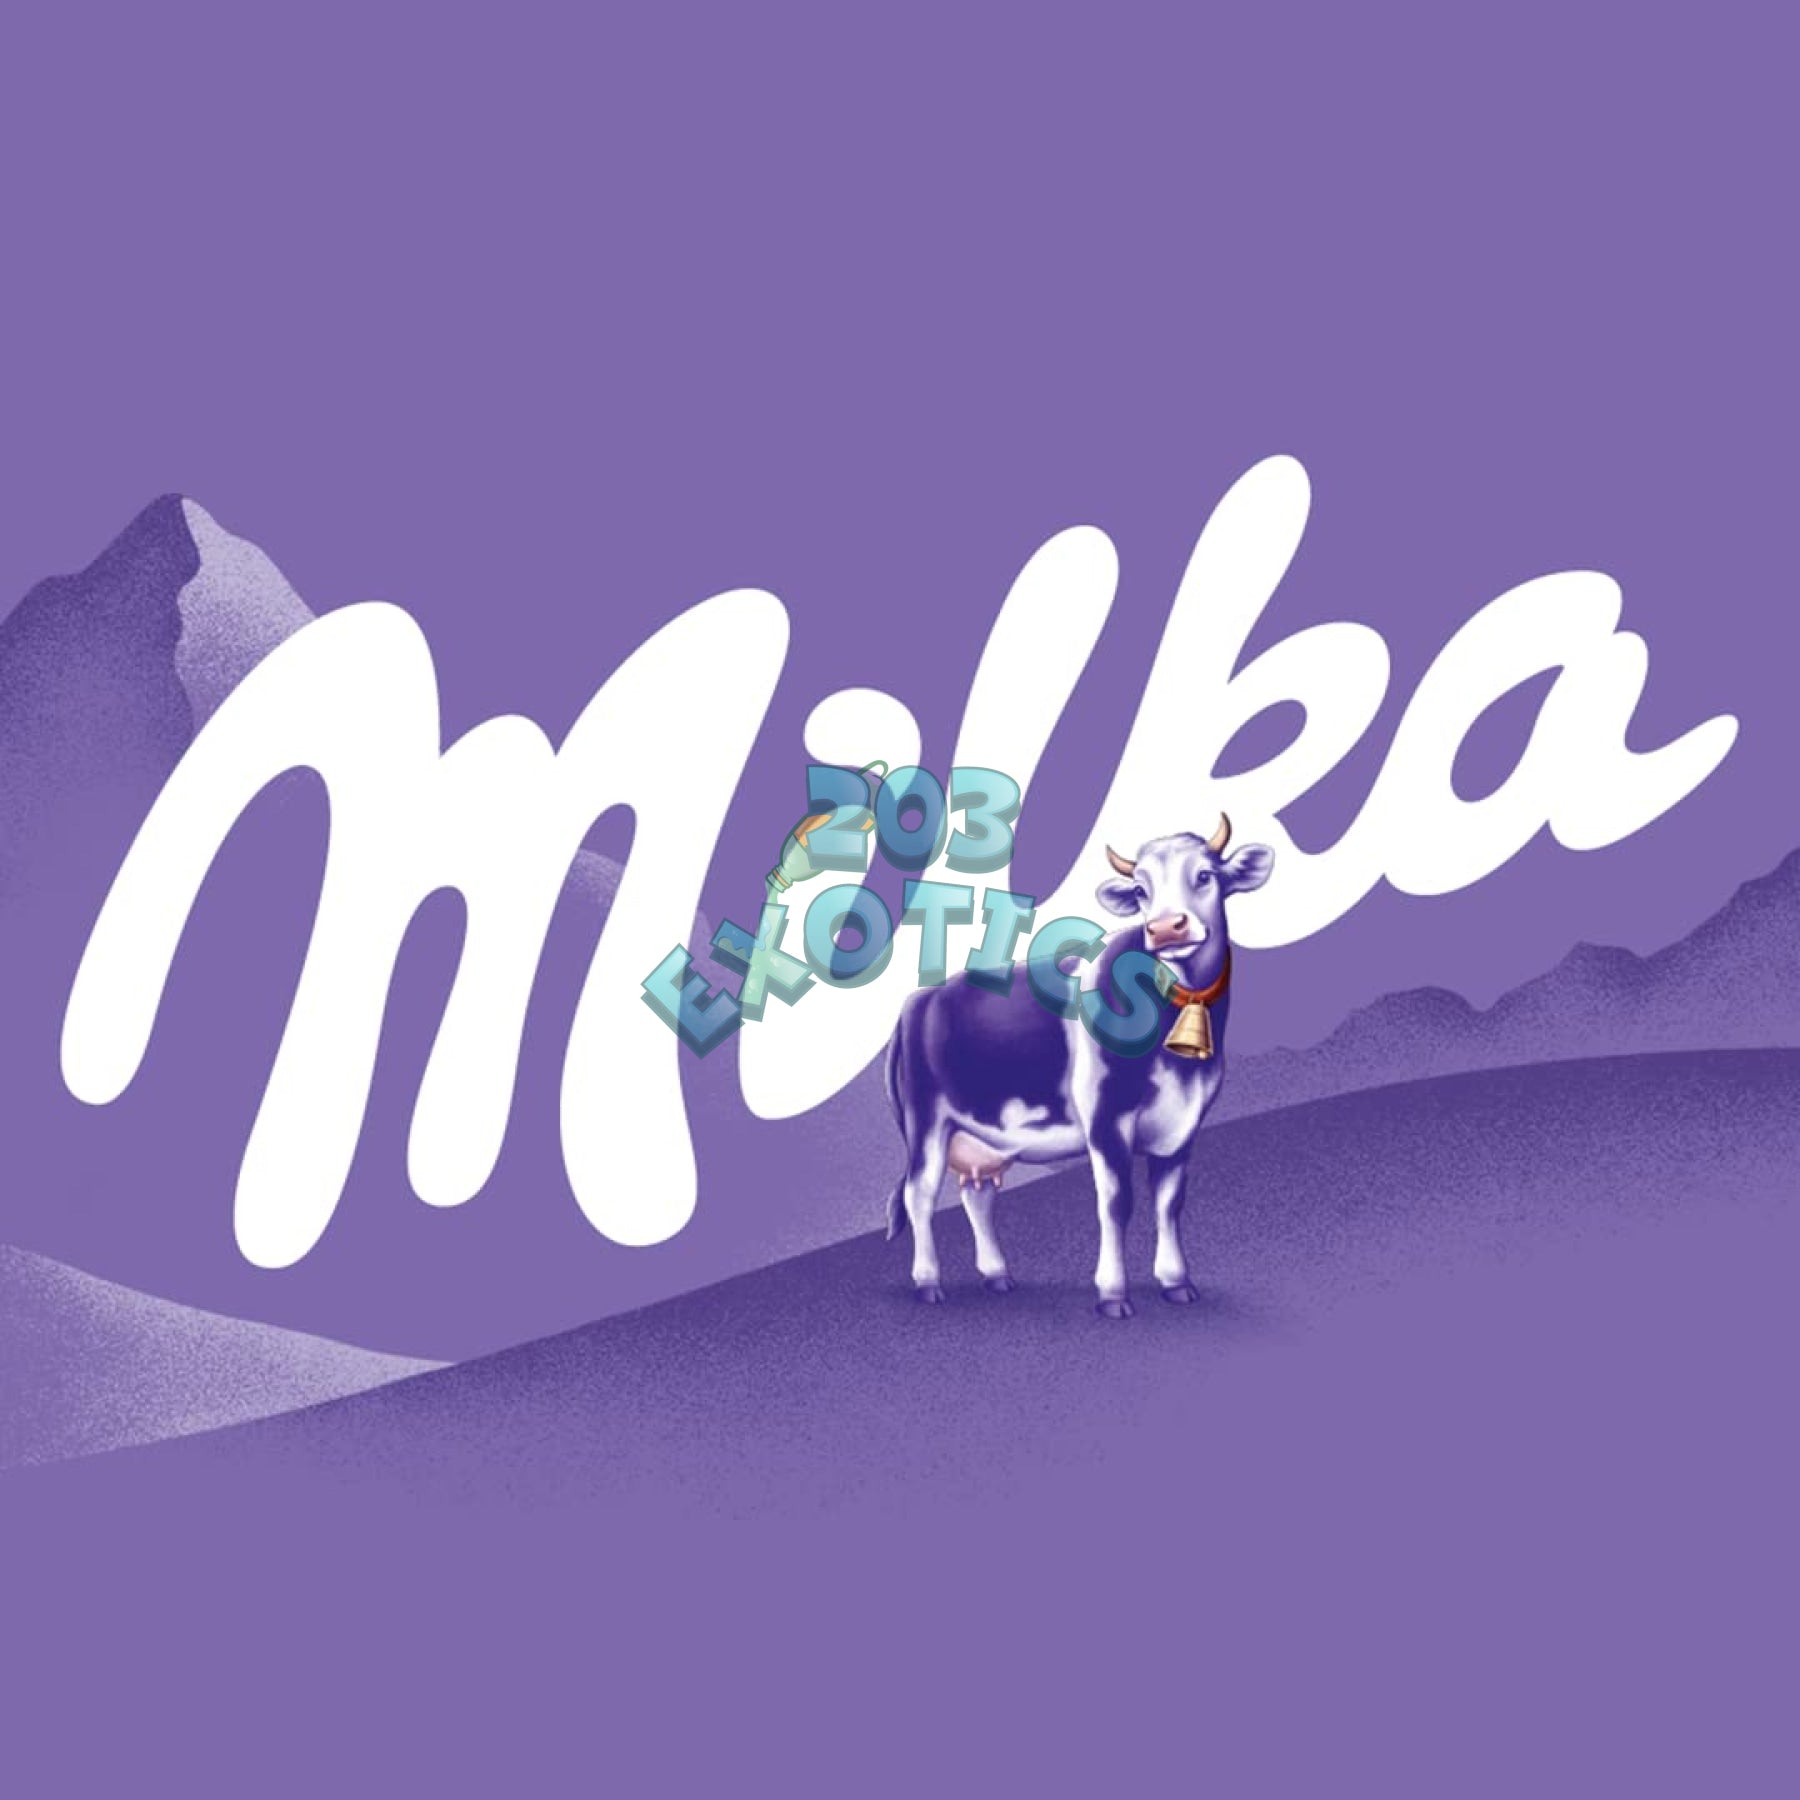 Milka Oreo (100G)